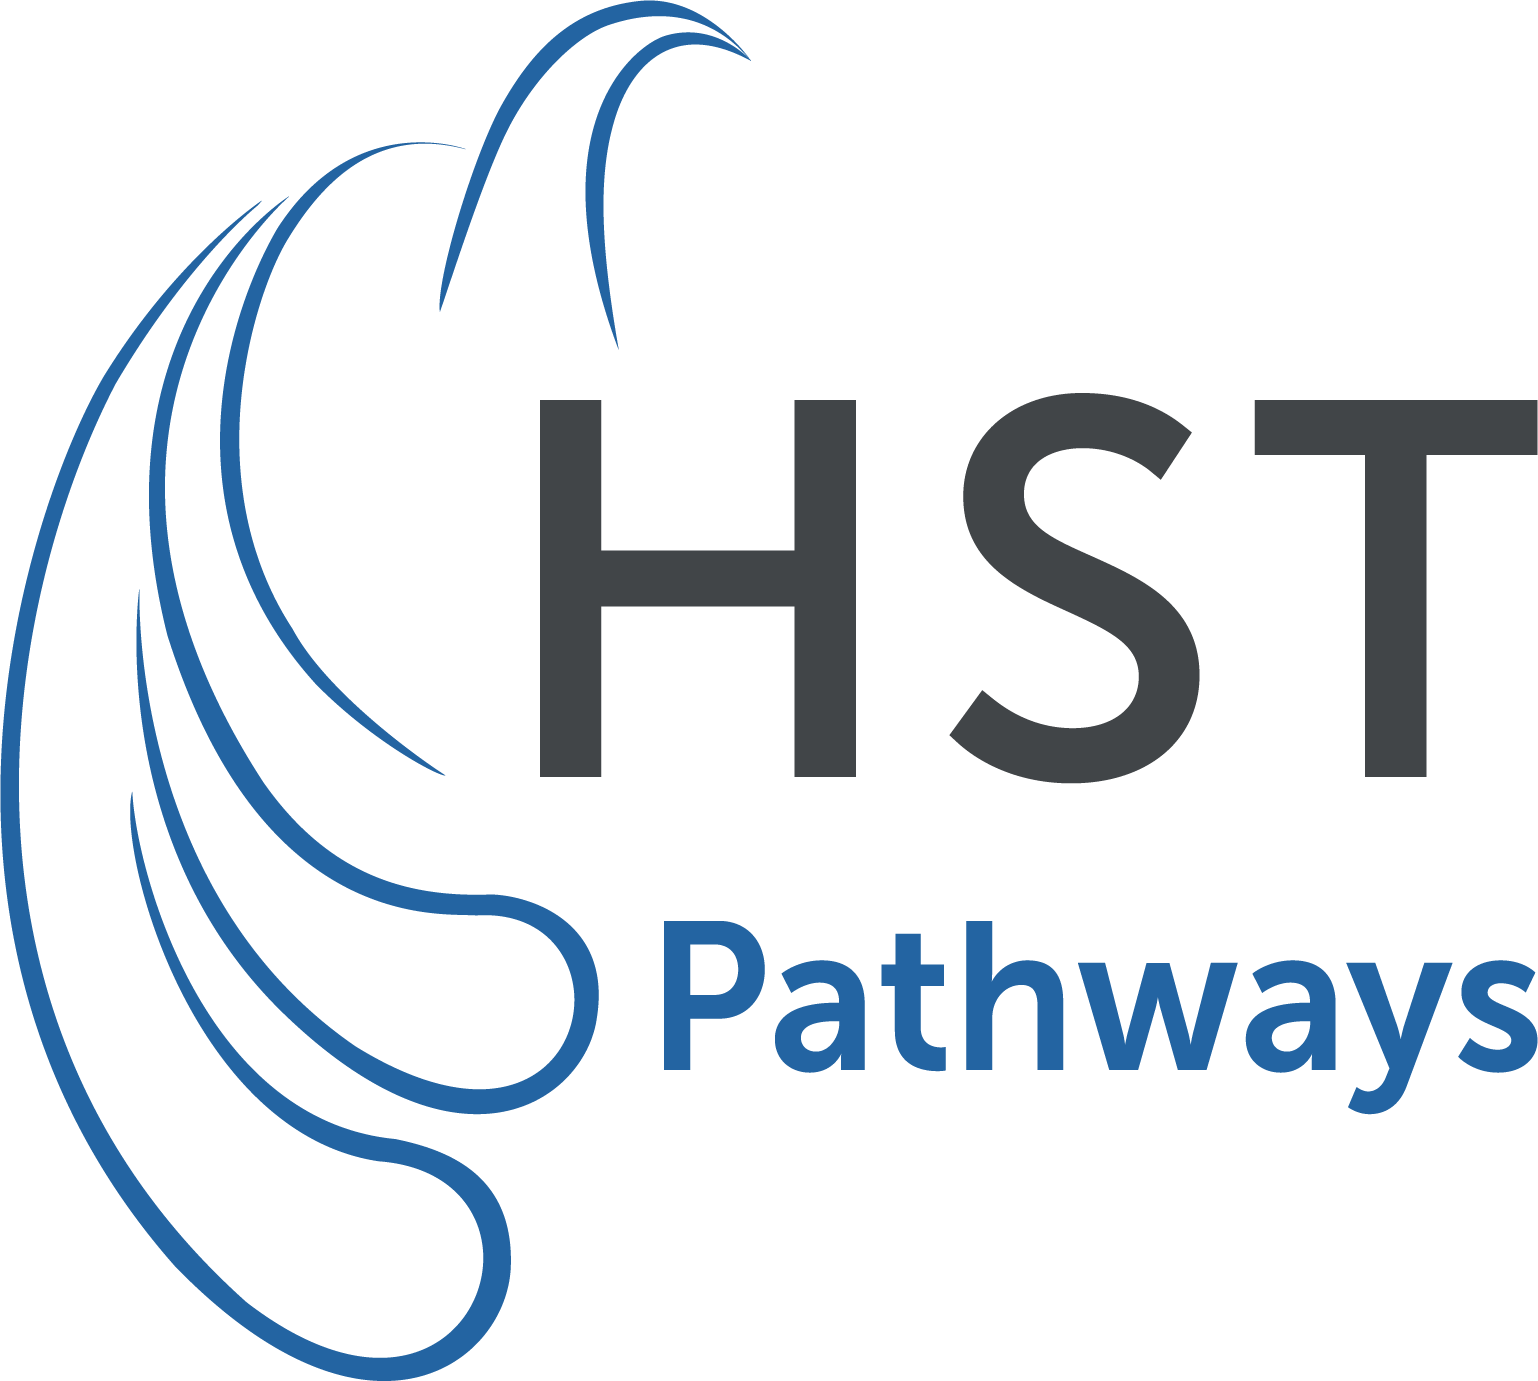 HST Pathways Recogni